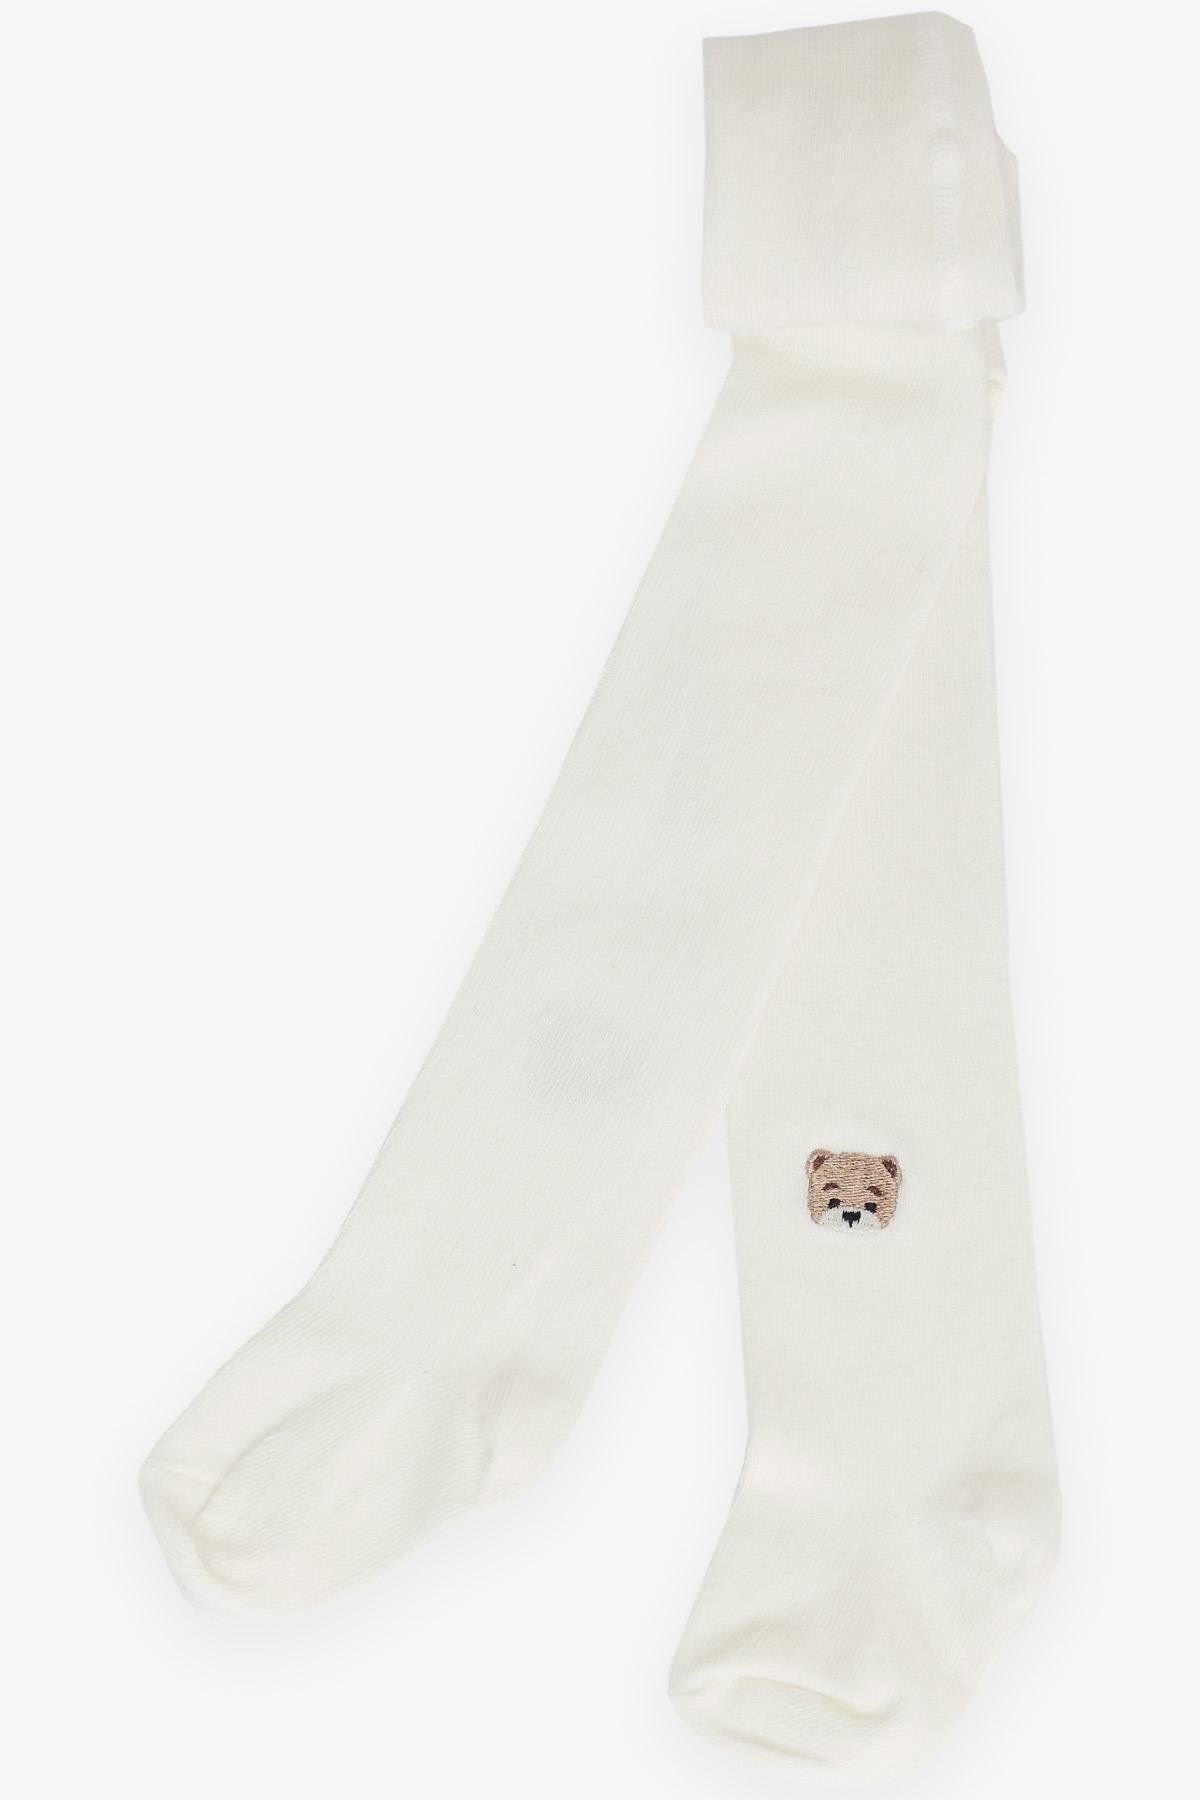 Katamino Erkek Bebek Külotlu Çorap Sevimli Ayıcık Nakışlı 0-18 Ay, Ekru